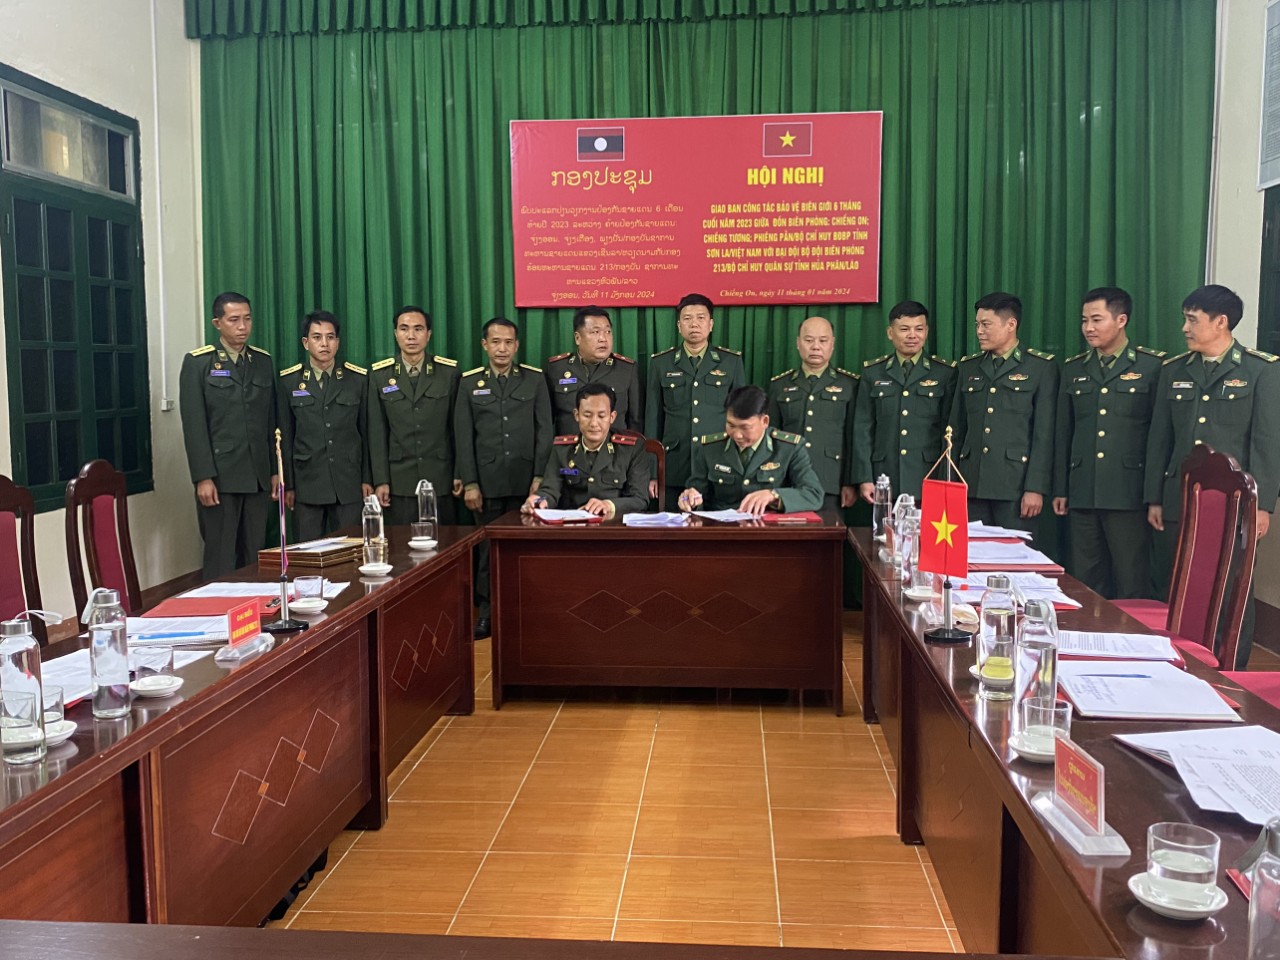 BĐBP Sơn La: Phối hợp chặt chẽ trong công tác quản lý bảo vệ biên giới- Ảnh 1.